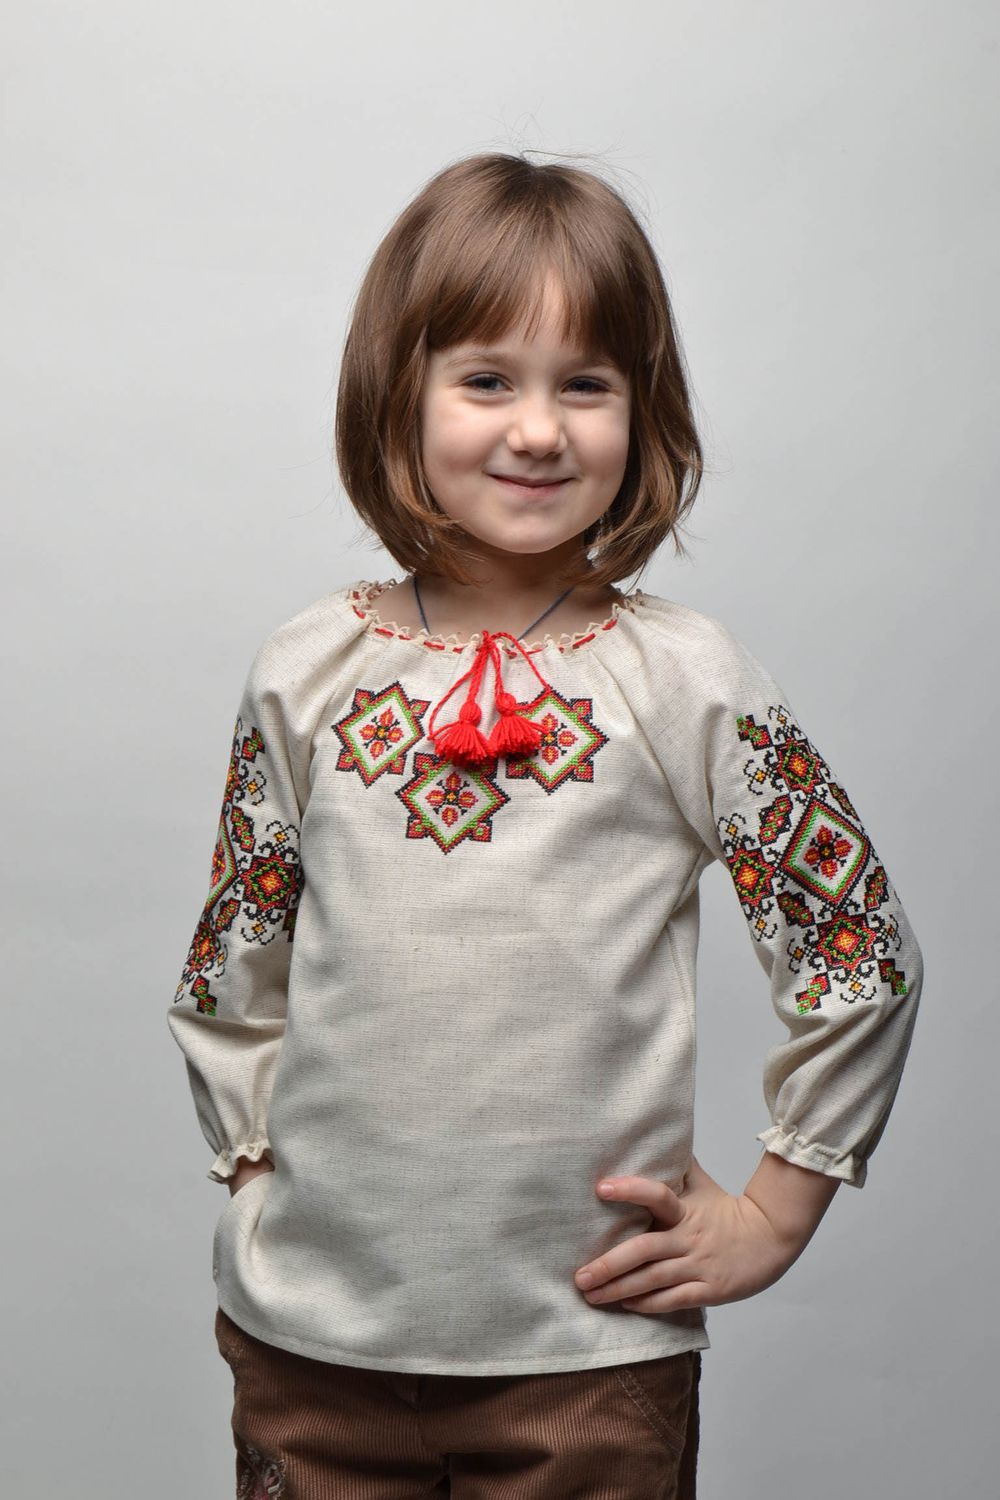 Camisa étnica bordada de manga larga para niña de 5-7 años de edad foto 1